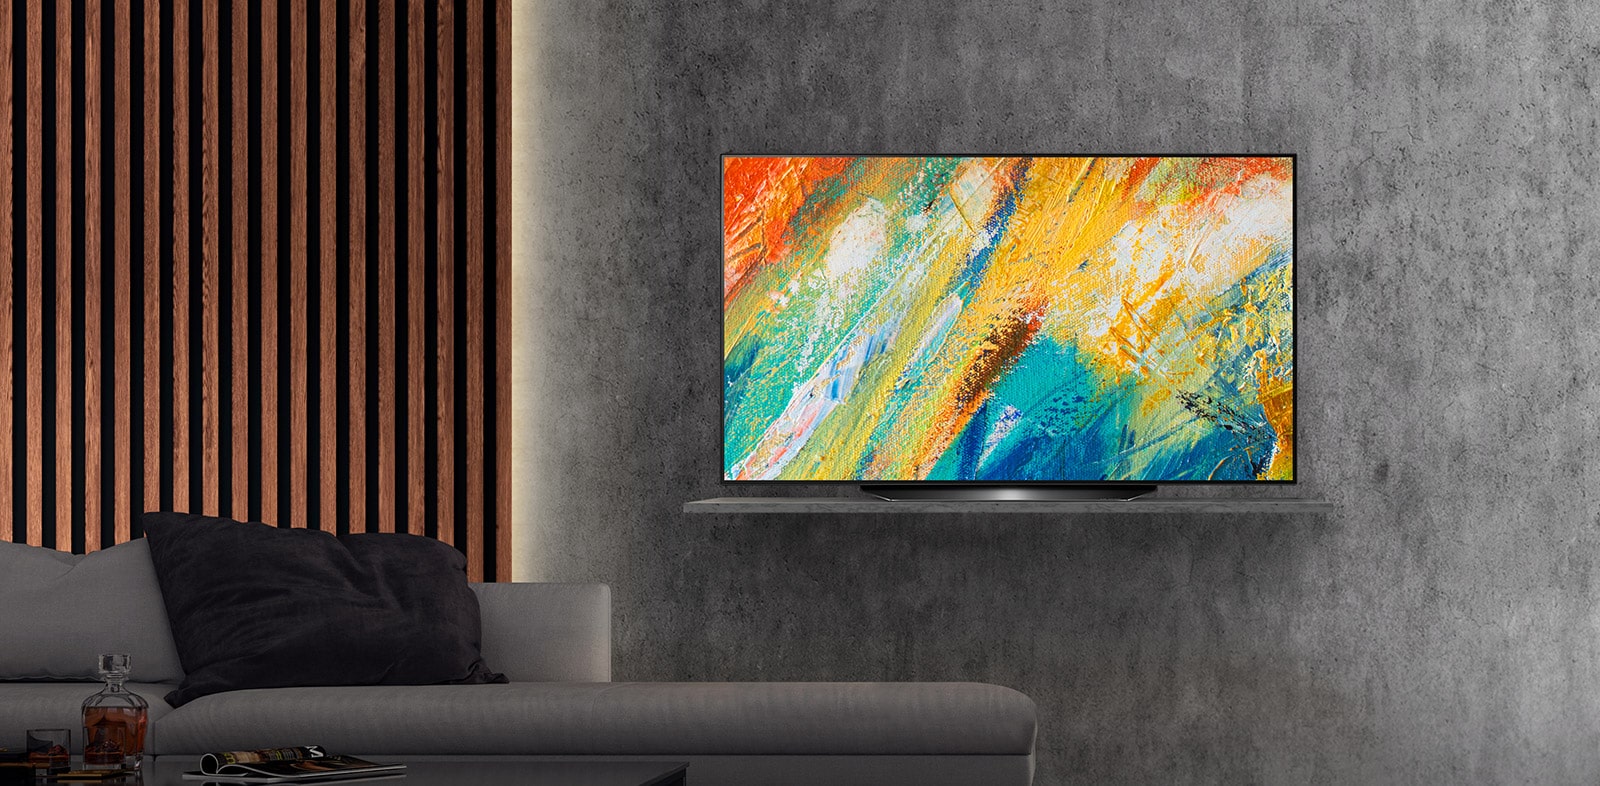 Telewizor hotelowy OLED 4K Gallery Design z technologią Pro: rozwiązania centryczne